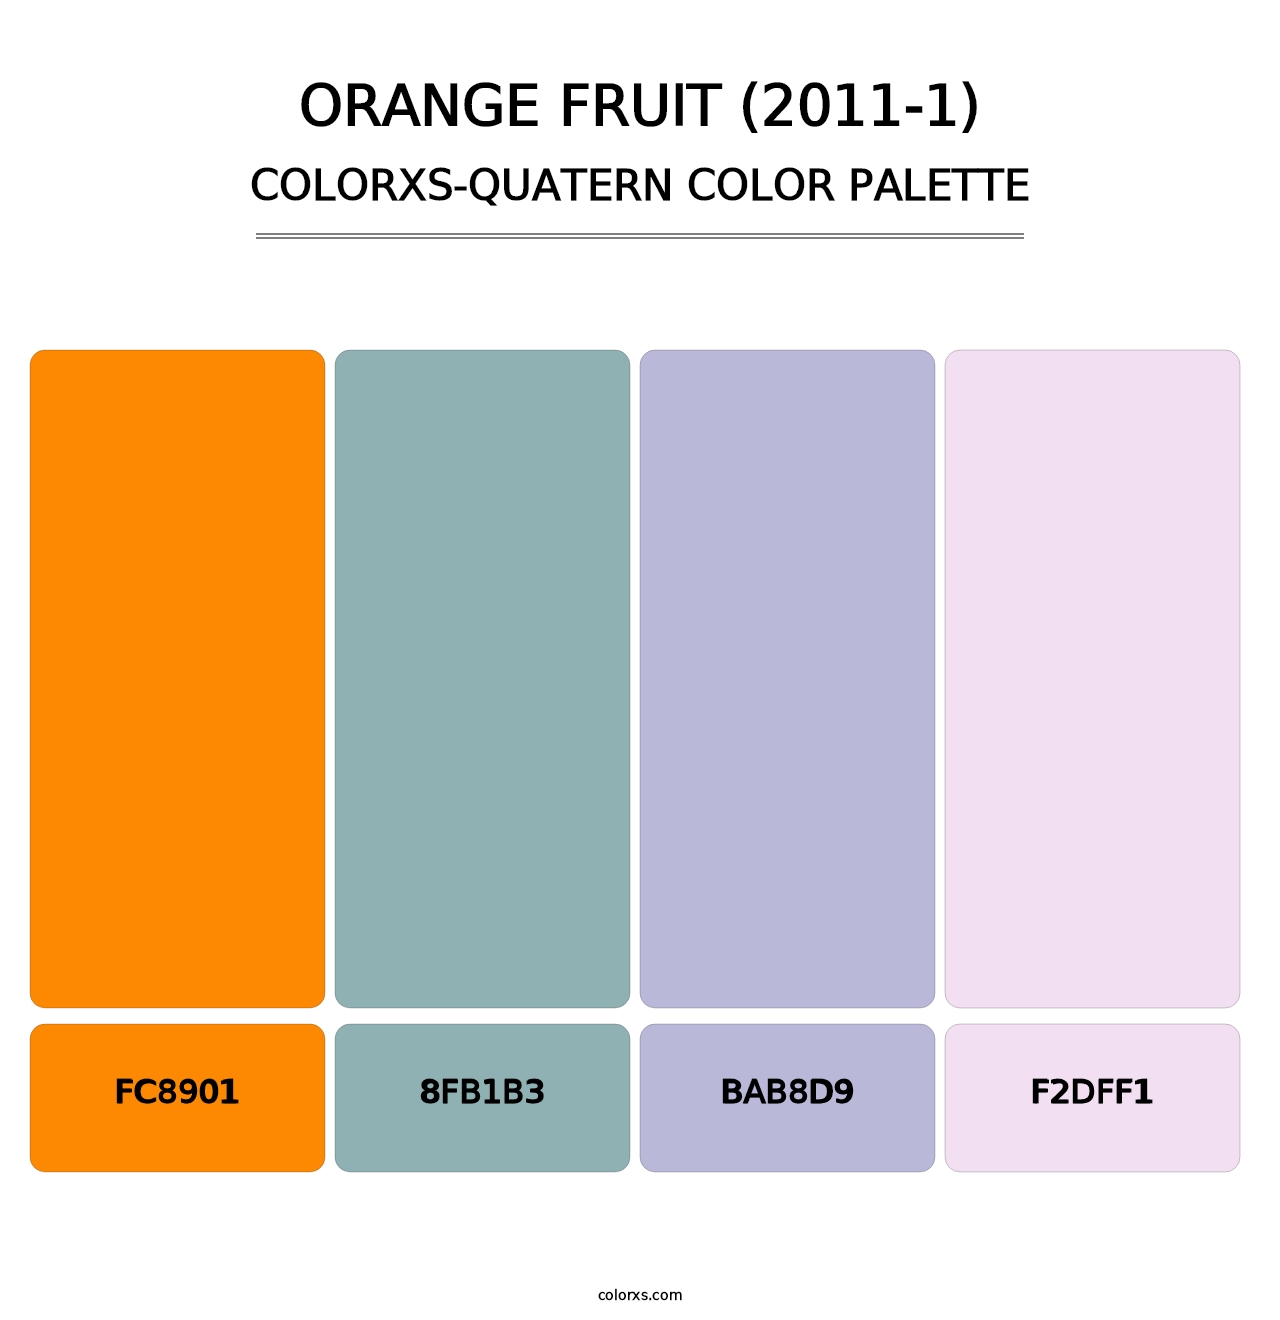 Orange Fruit (2011-1) - Colorxs Quatern Palette